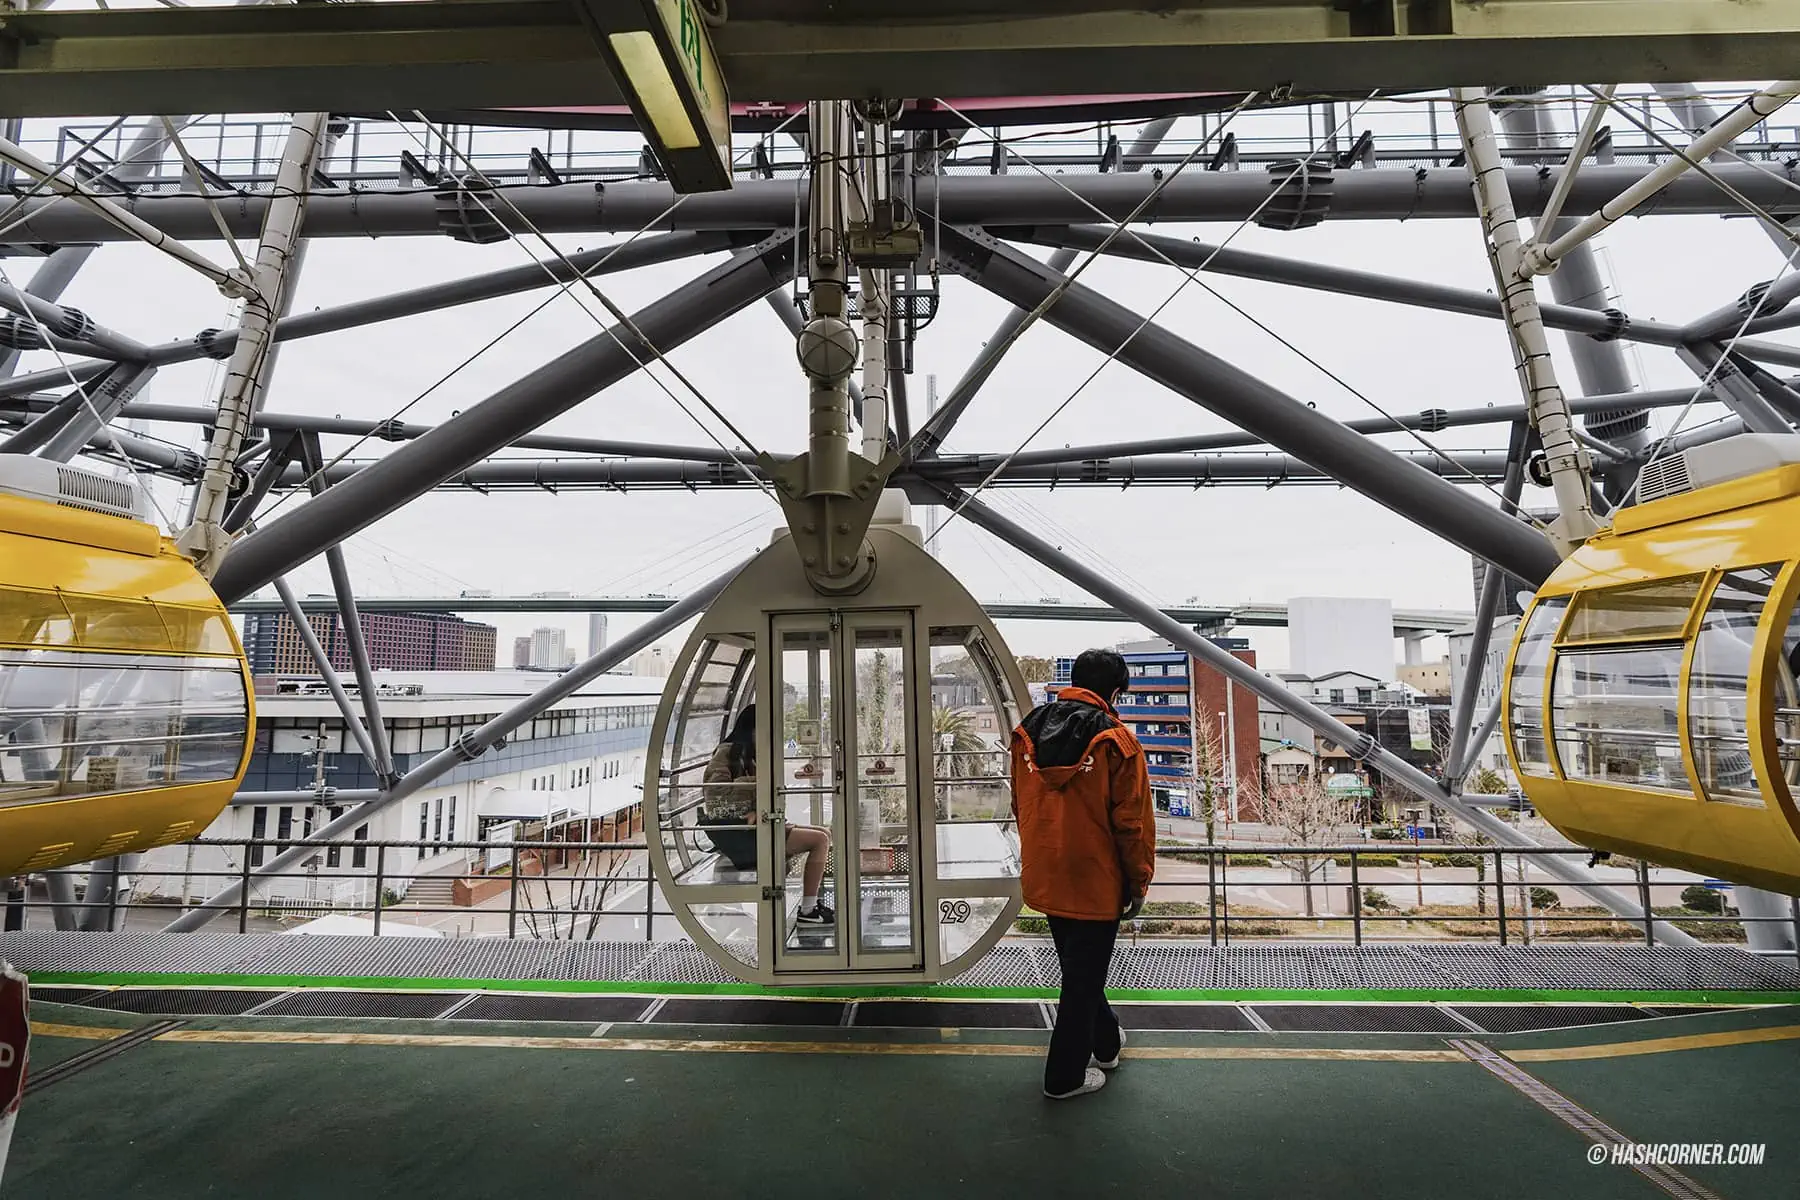 รีวิว ชิงช้าสวรรค์เท็มโปซาน (Tempozan Giant Ferris Wheel) x โอซาก้า 